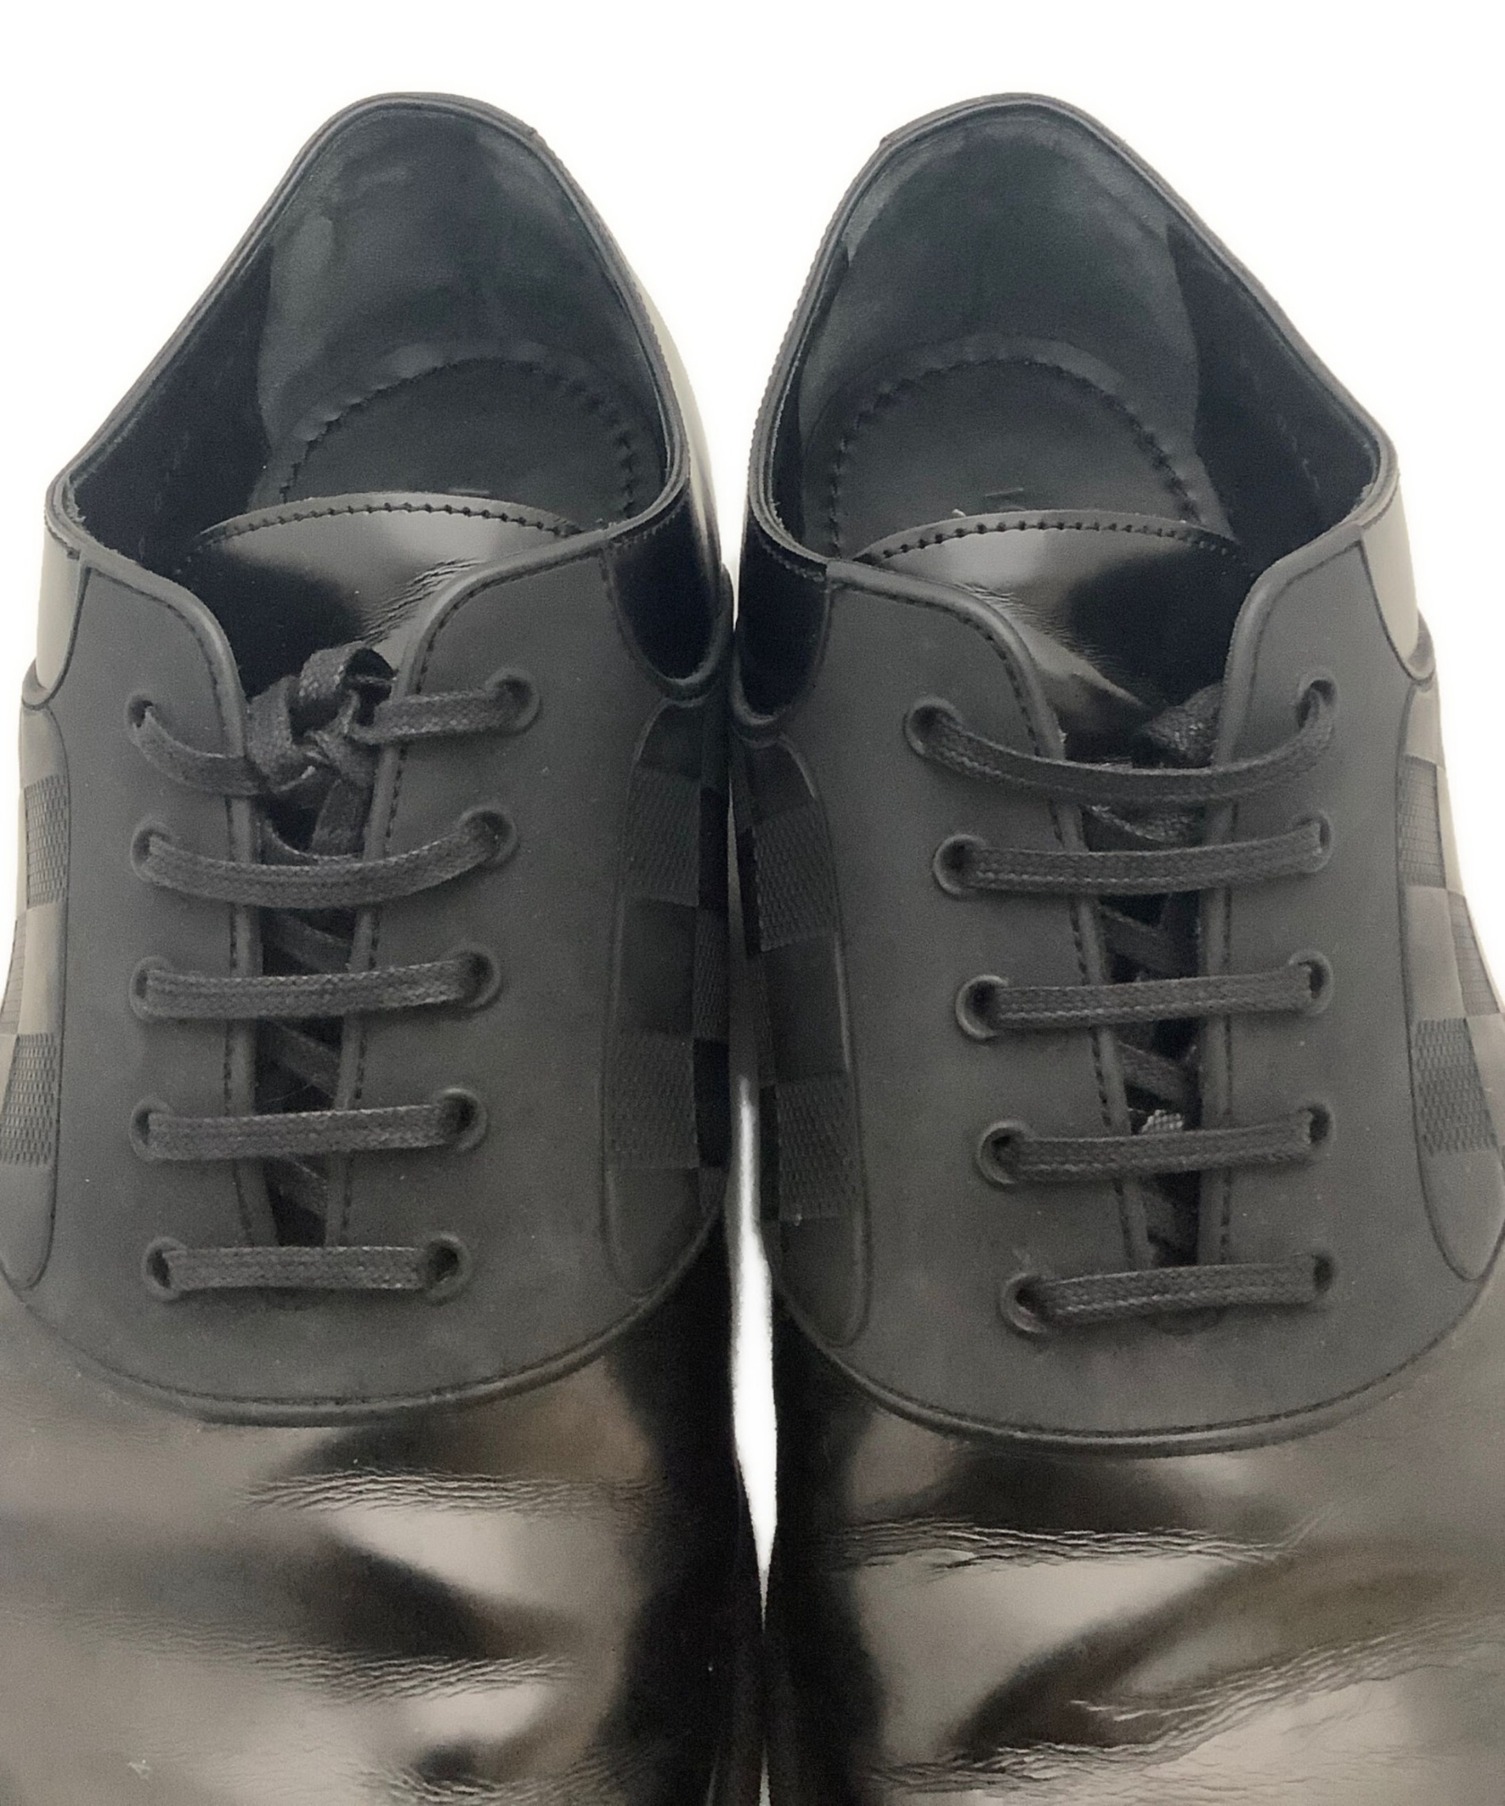 ルイヴィトン LOUIS VUITTON シューズ ダミエ パテントレザー ビジネスシューズ メンズ 靴 8.5(27cm相当) ブラック